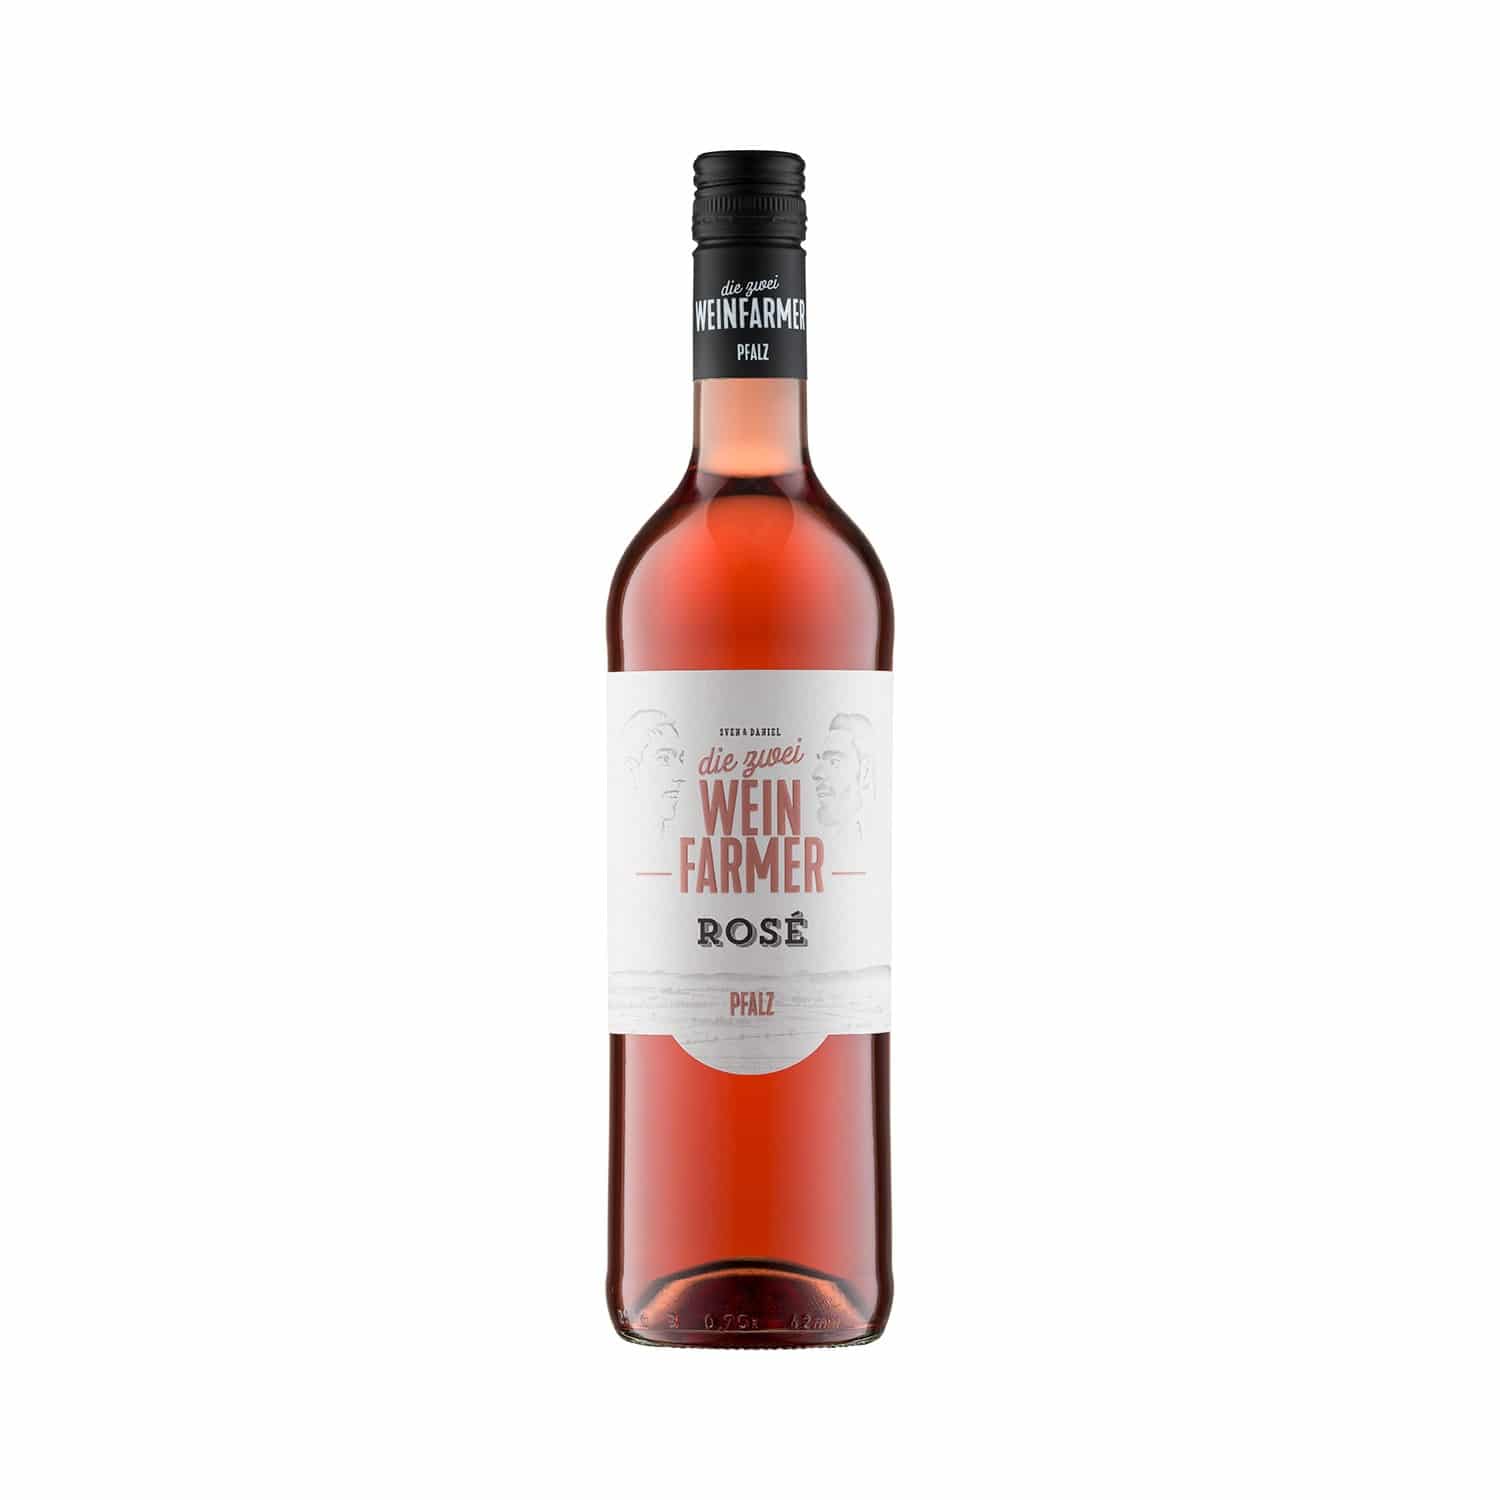 Die Weinfarmer - Rosé trocken 2018